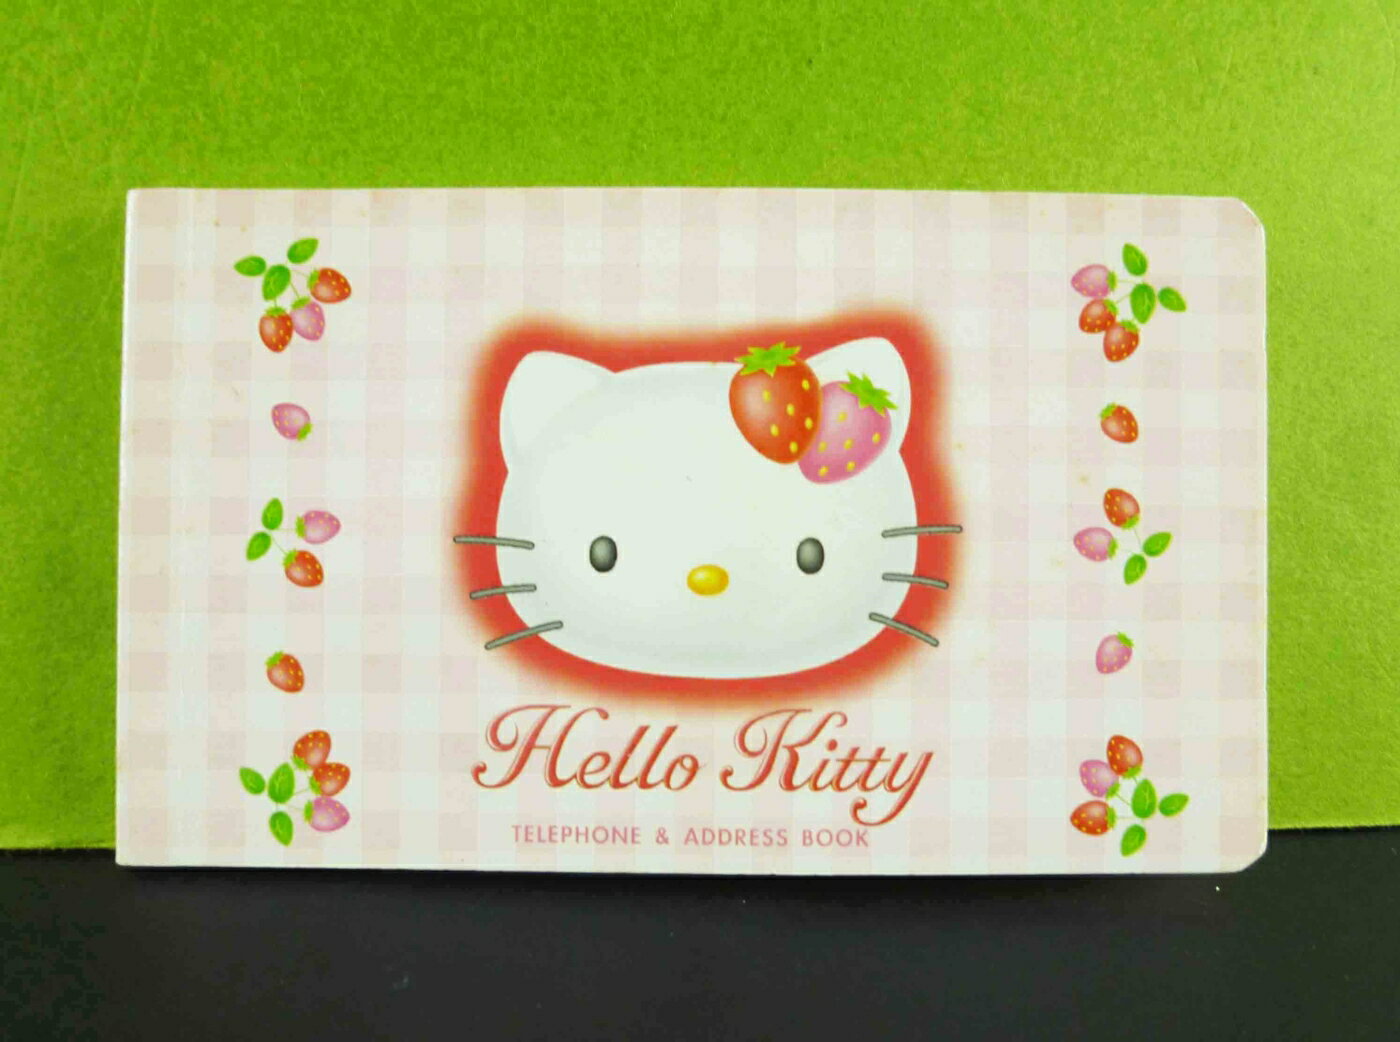 【震撼精品百貨】Hello Kitty 凱蒂貓 地址本-草莓格子 震撼日式精品百貨